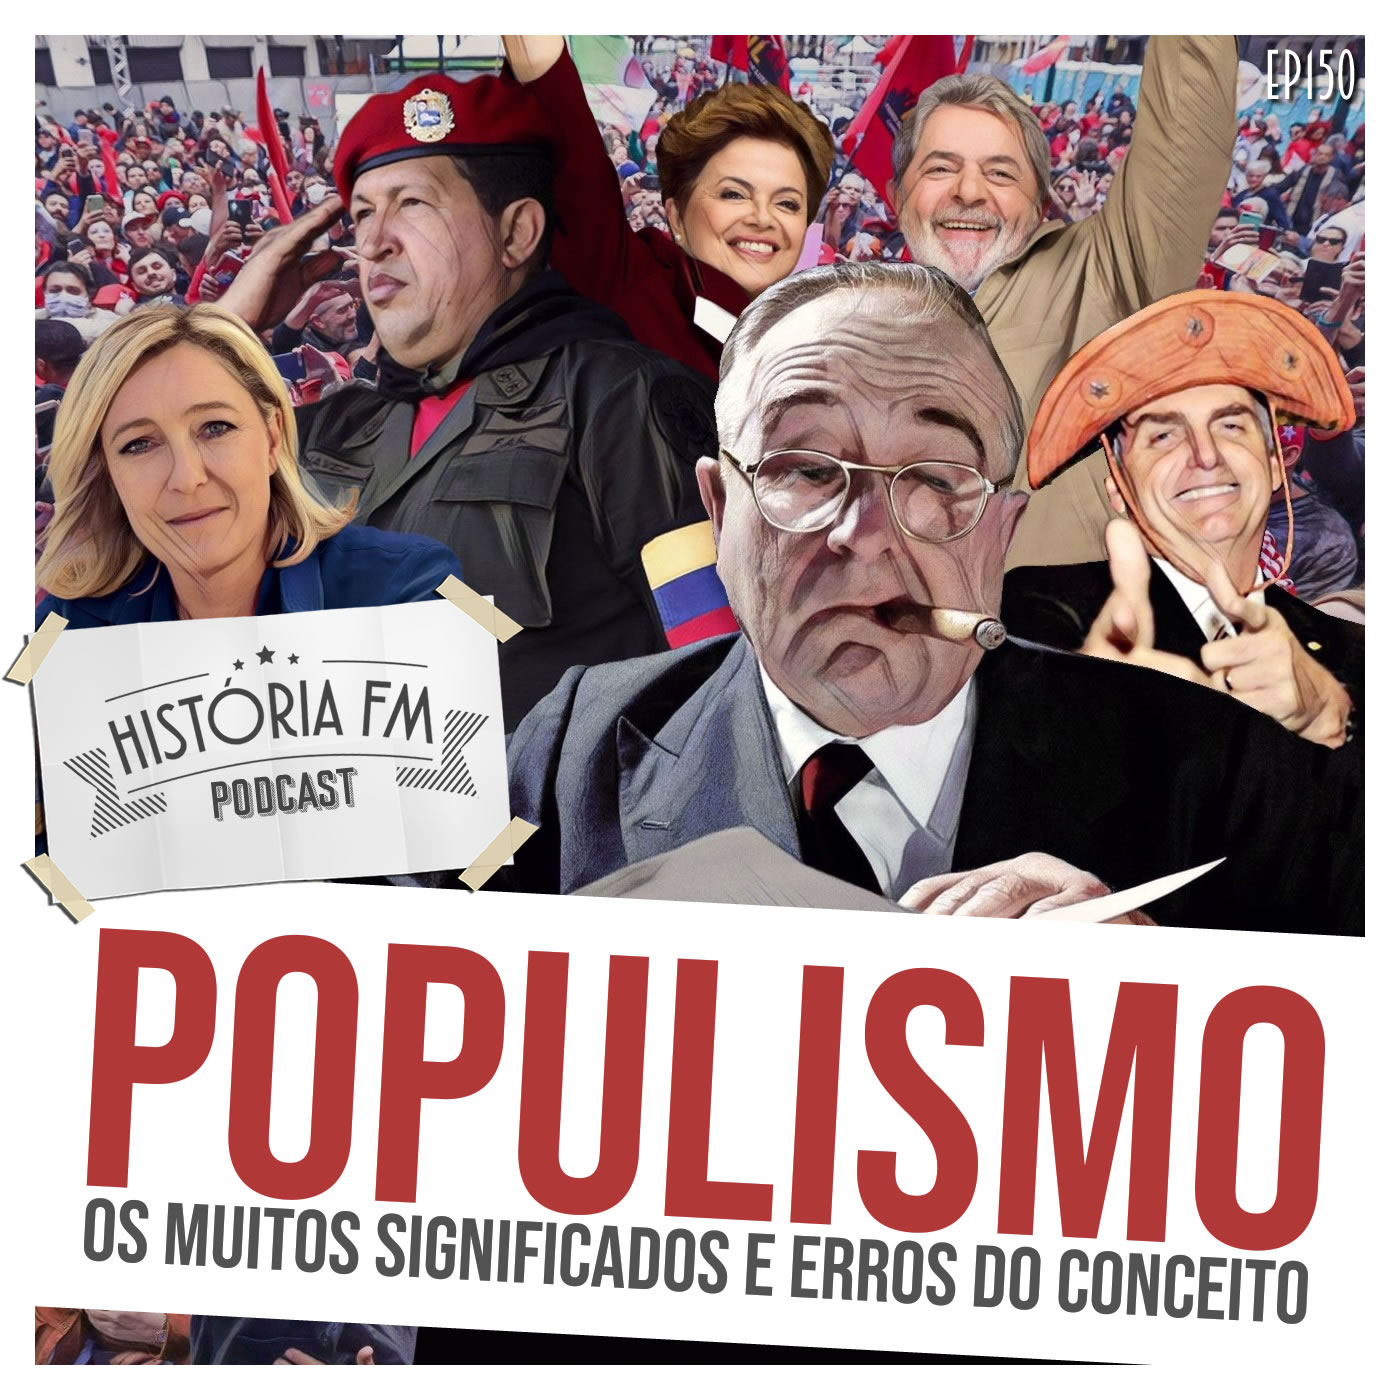 Populismo: os muitos significados e erros do conceito